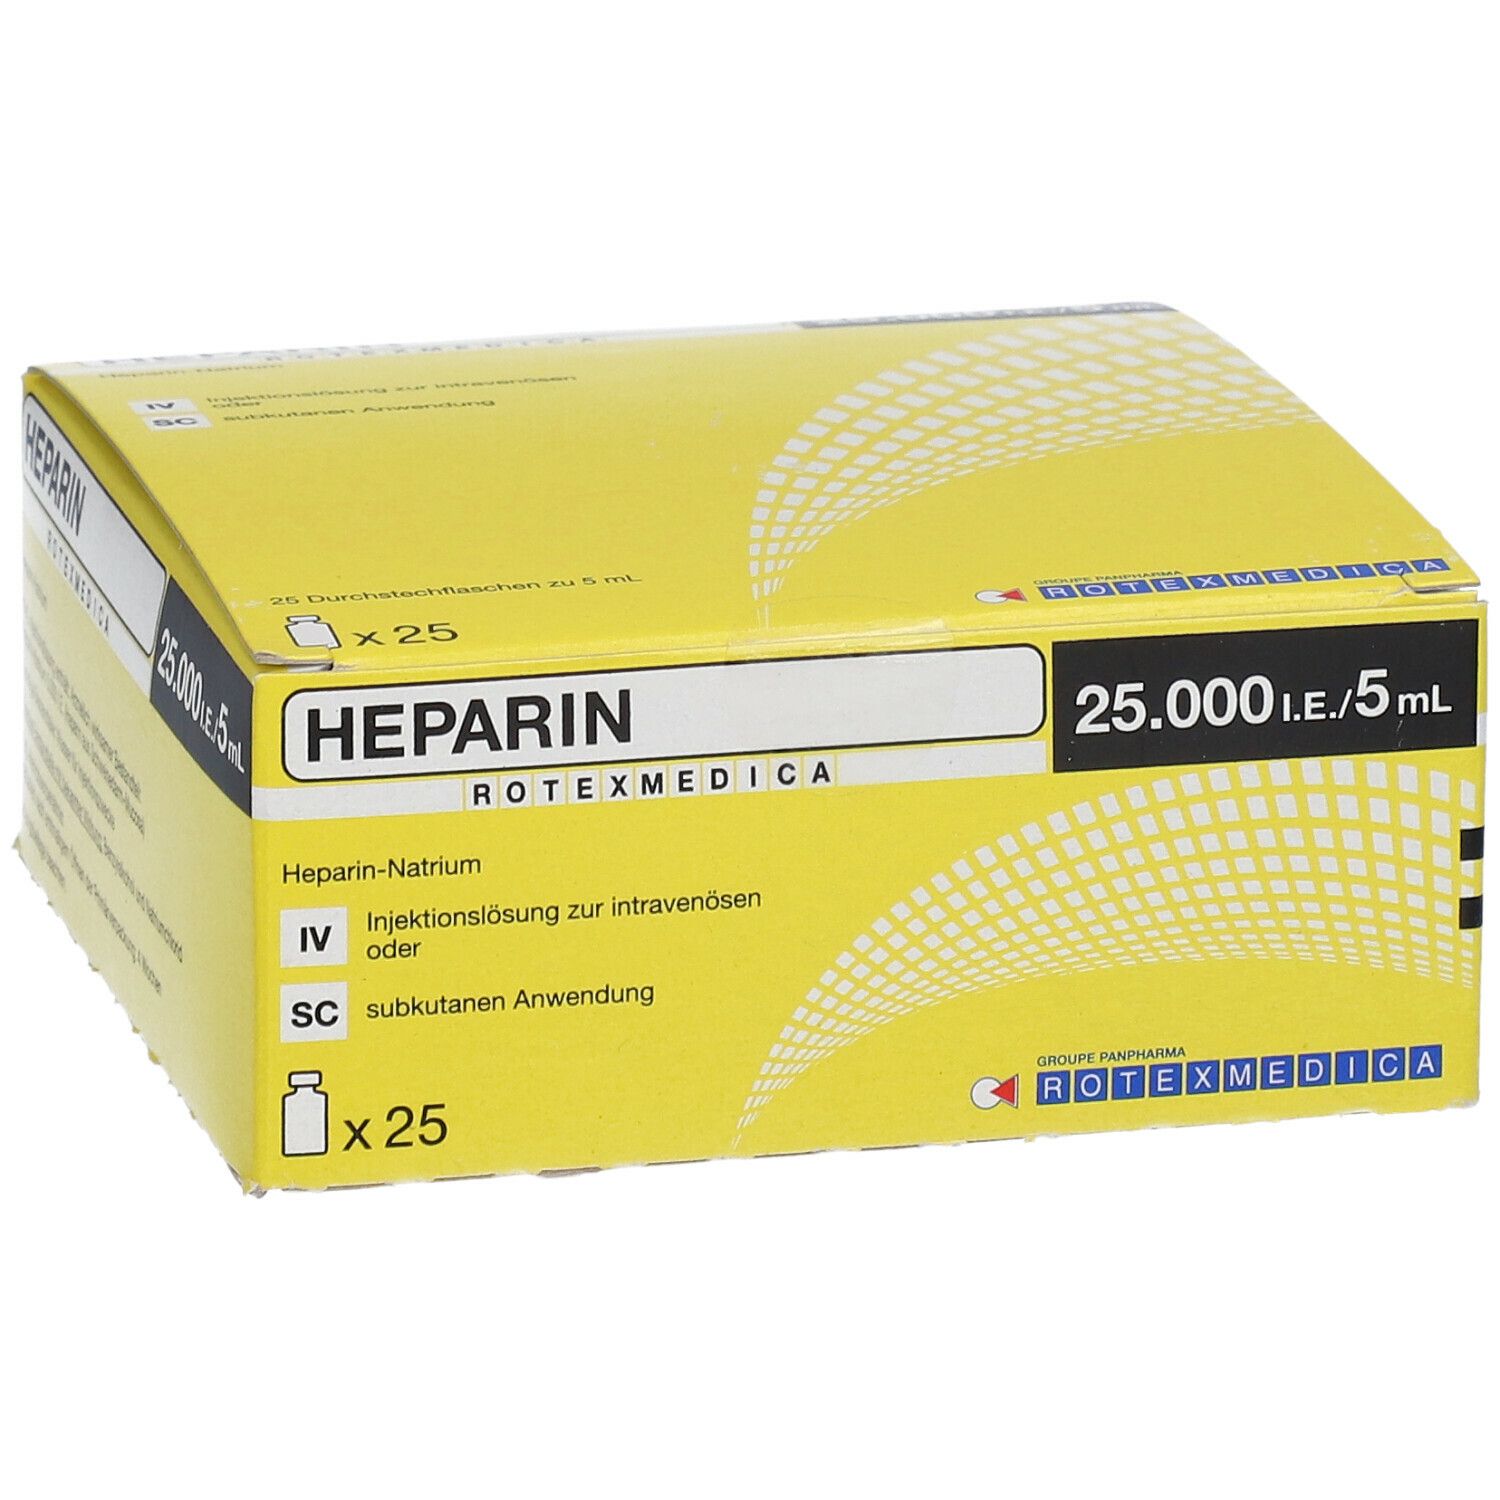 Heparin-Rotexmedica 25.000 I.E./5 ml